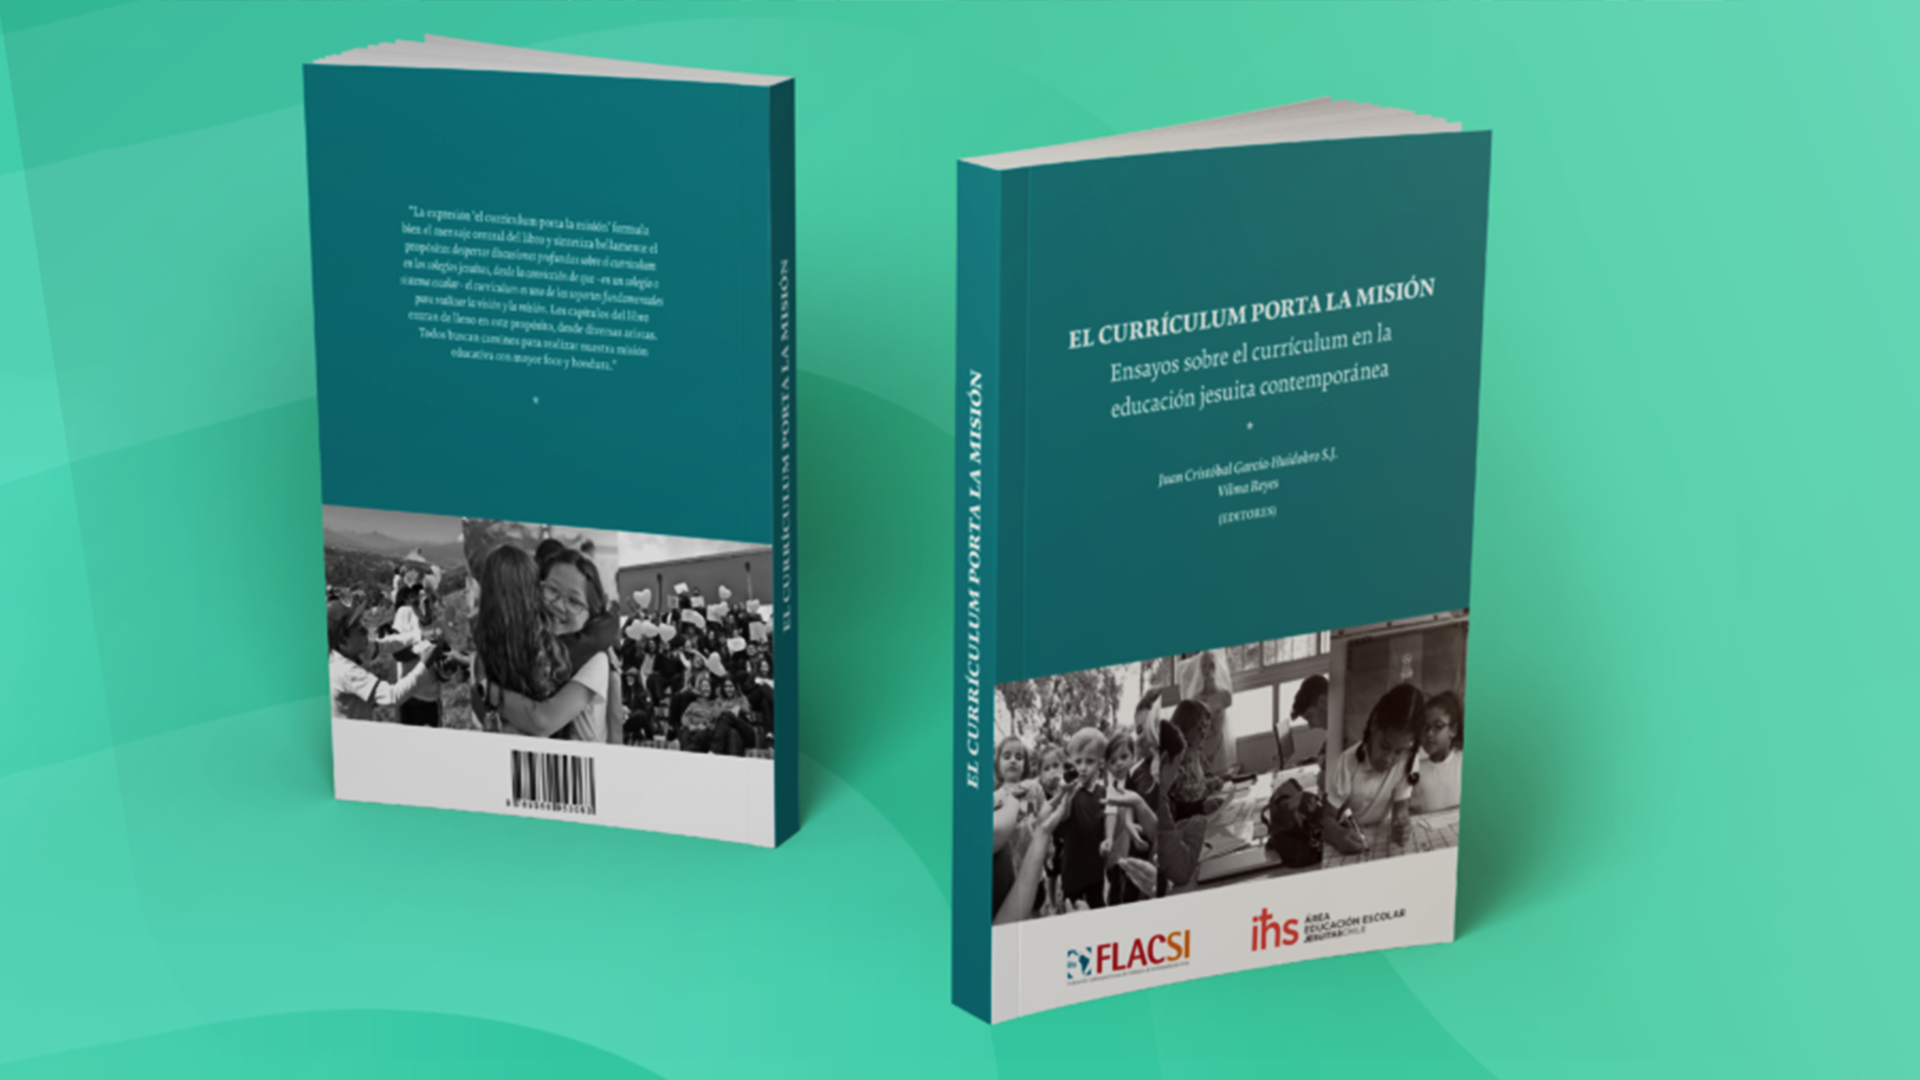 Publicación de la FLACSI y Jesuitas Chile- Área de Educación Escolar: “El currículum porta la misión